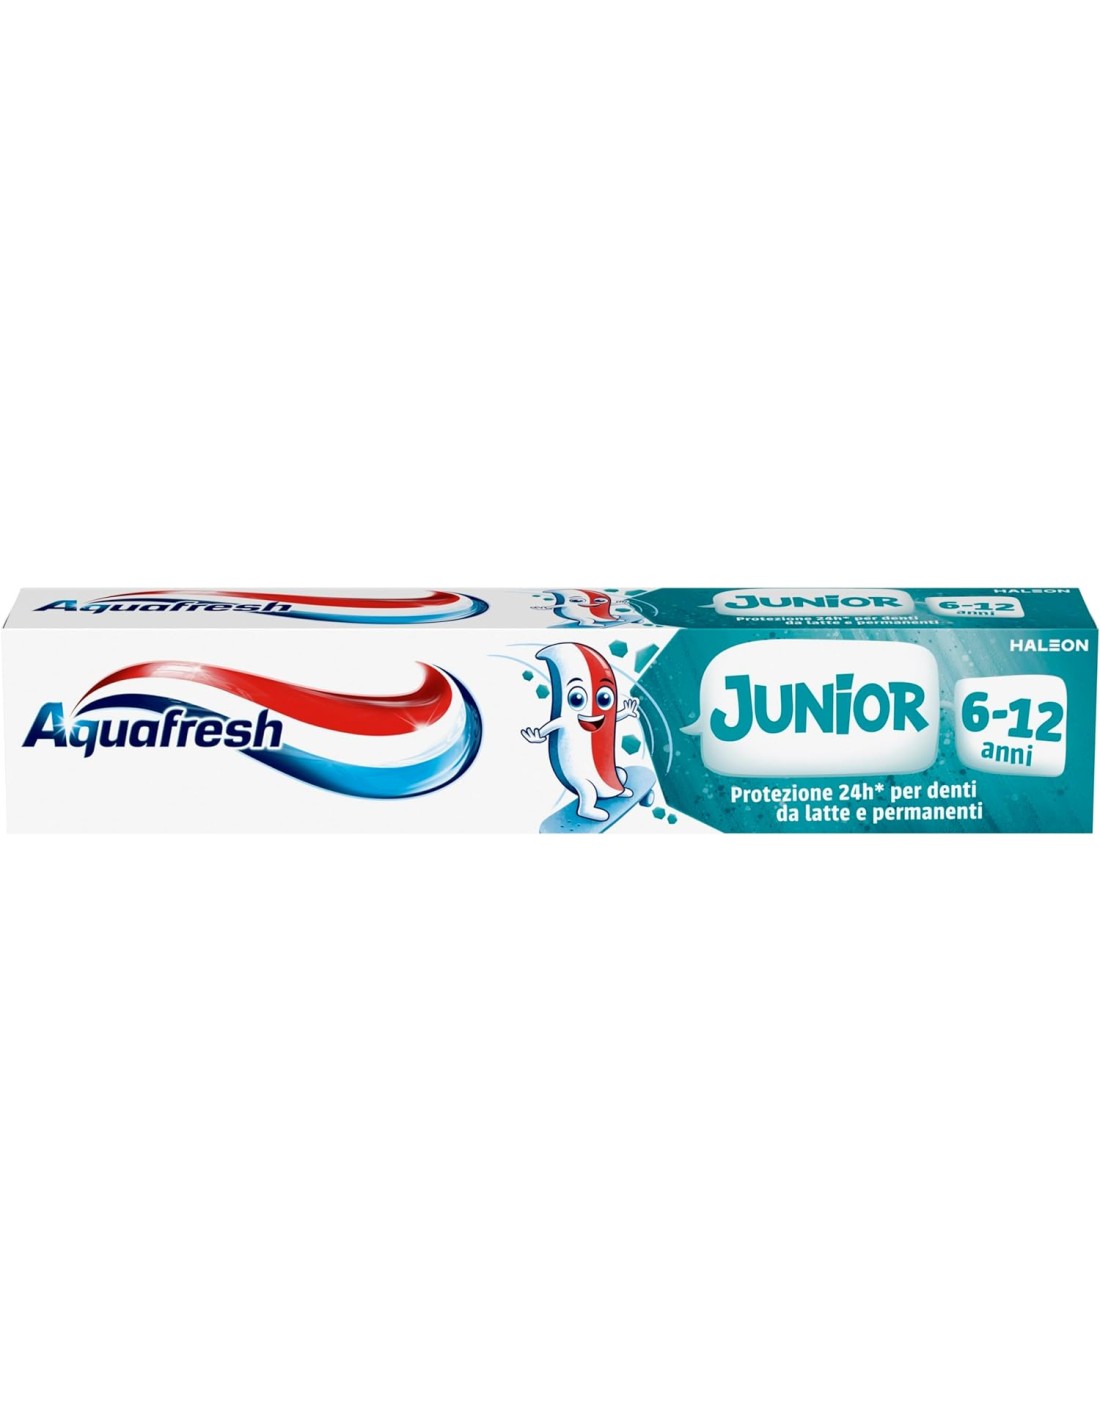 Aquafresh Dentifricio Junior 75ml - Protezione Fluoro Bambini +6 Anni